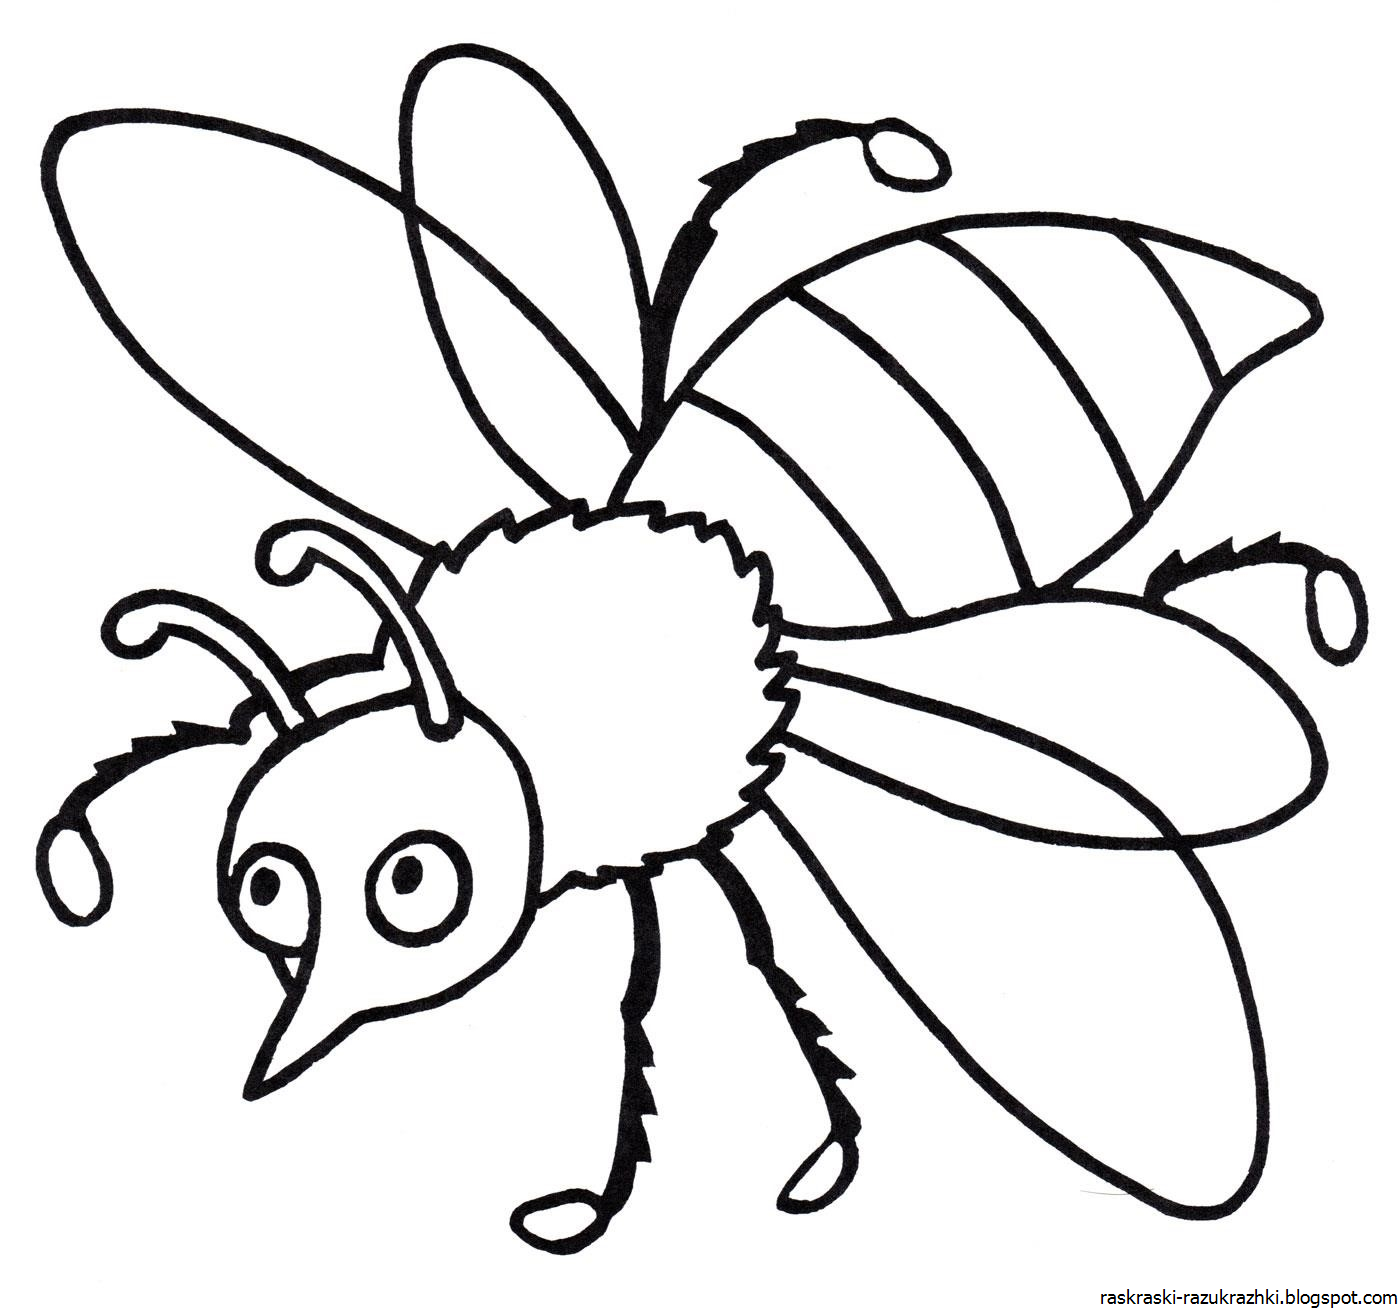 Распечатать раскраску насекомые. Насекомые раскраска для детей. Раскраски насекомые для детей 5-6 лет. Пчела раскраска. Раскраска насекомые для малышей.